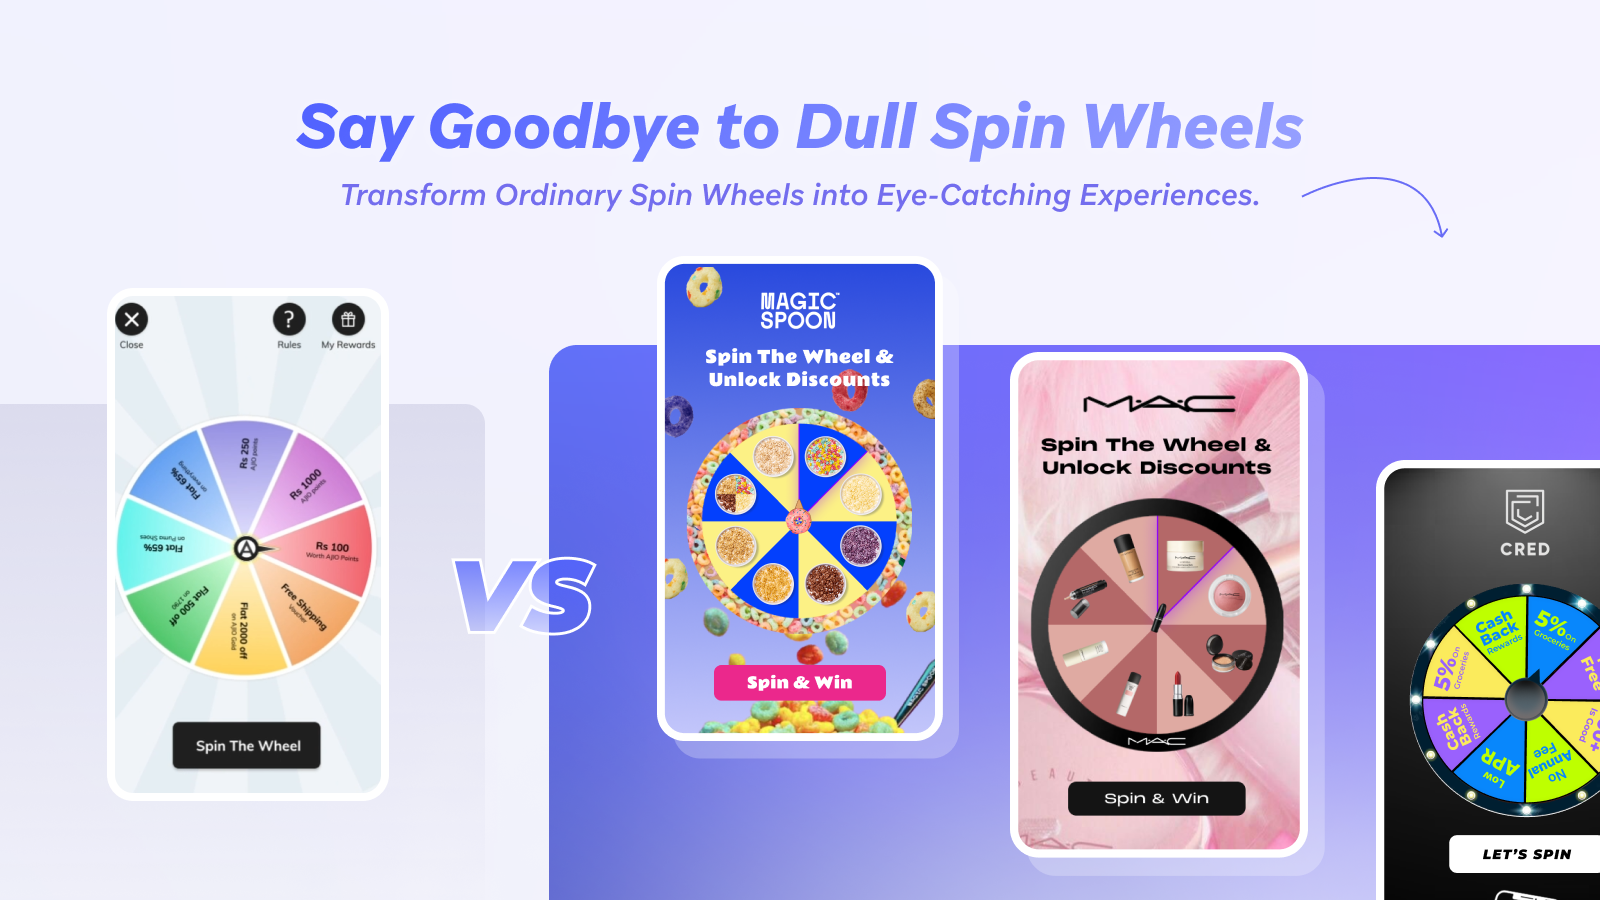 Impresionante y altamente personalizable Spin The Wheel con imagen/ texto